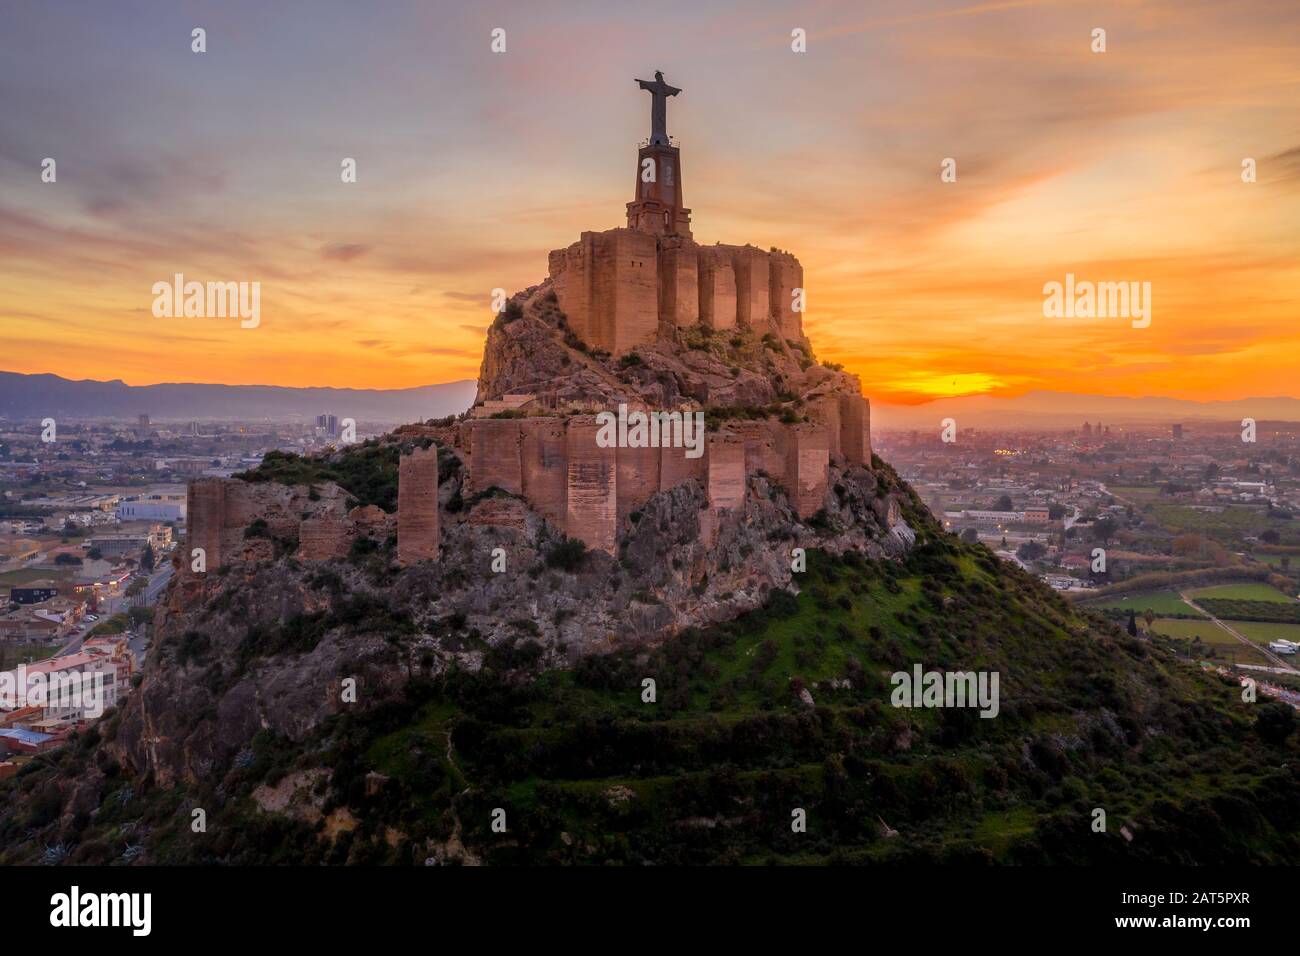 Monteagudo castello medievale rovina dodici torri rettangolari che circondano la collina e il sacro cuore di Gesù Cristo statua in cima vicino Murcia Spagna Foto Stock